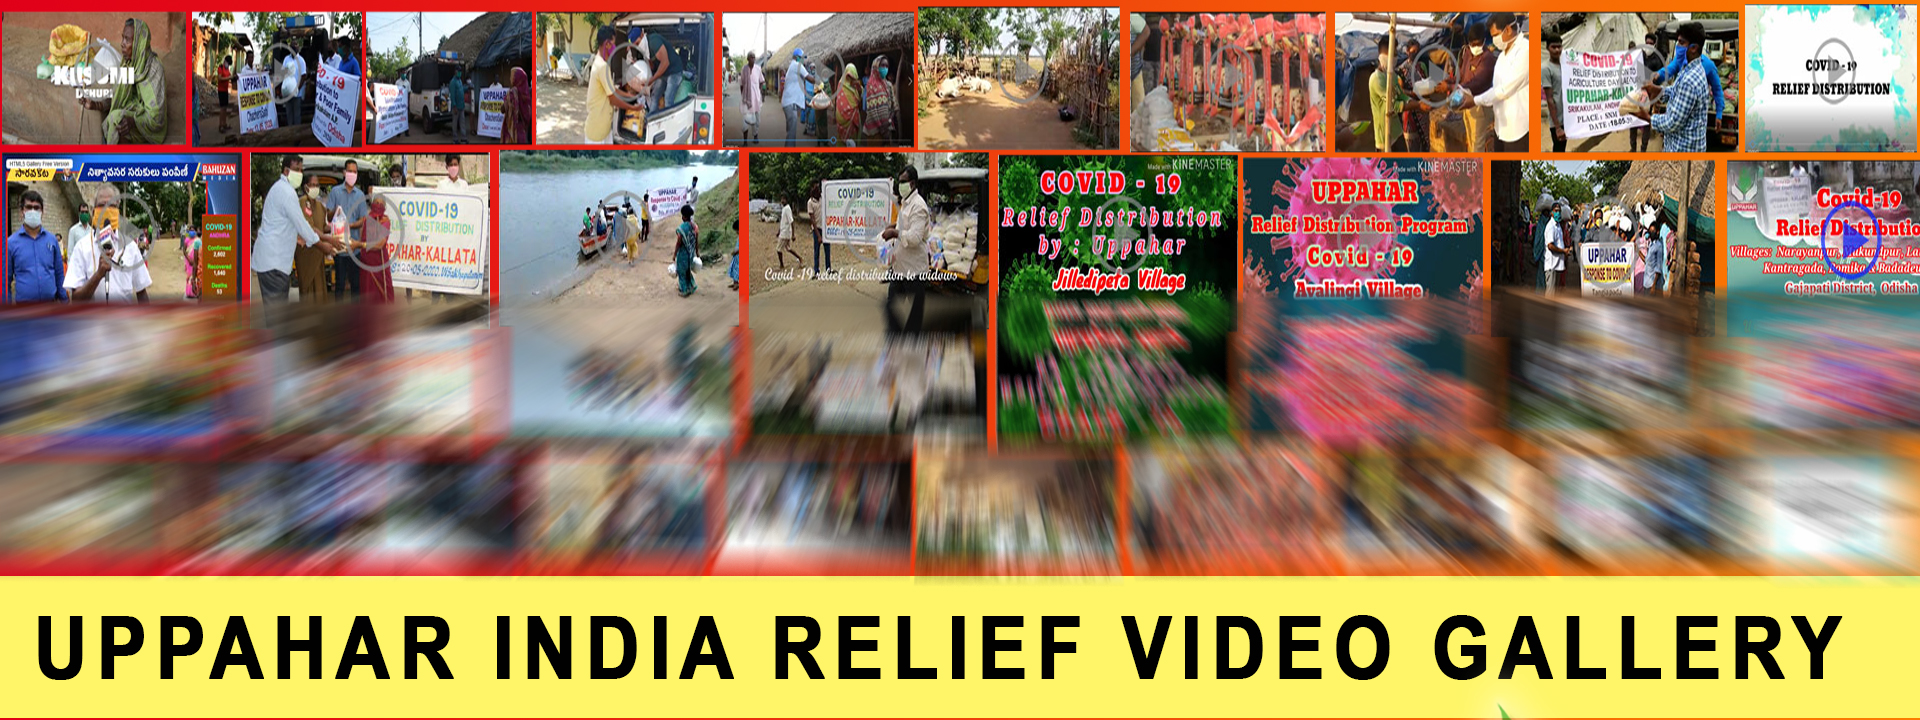 Uppahar India COVID19 Relief Programs - May - 2020